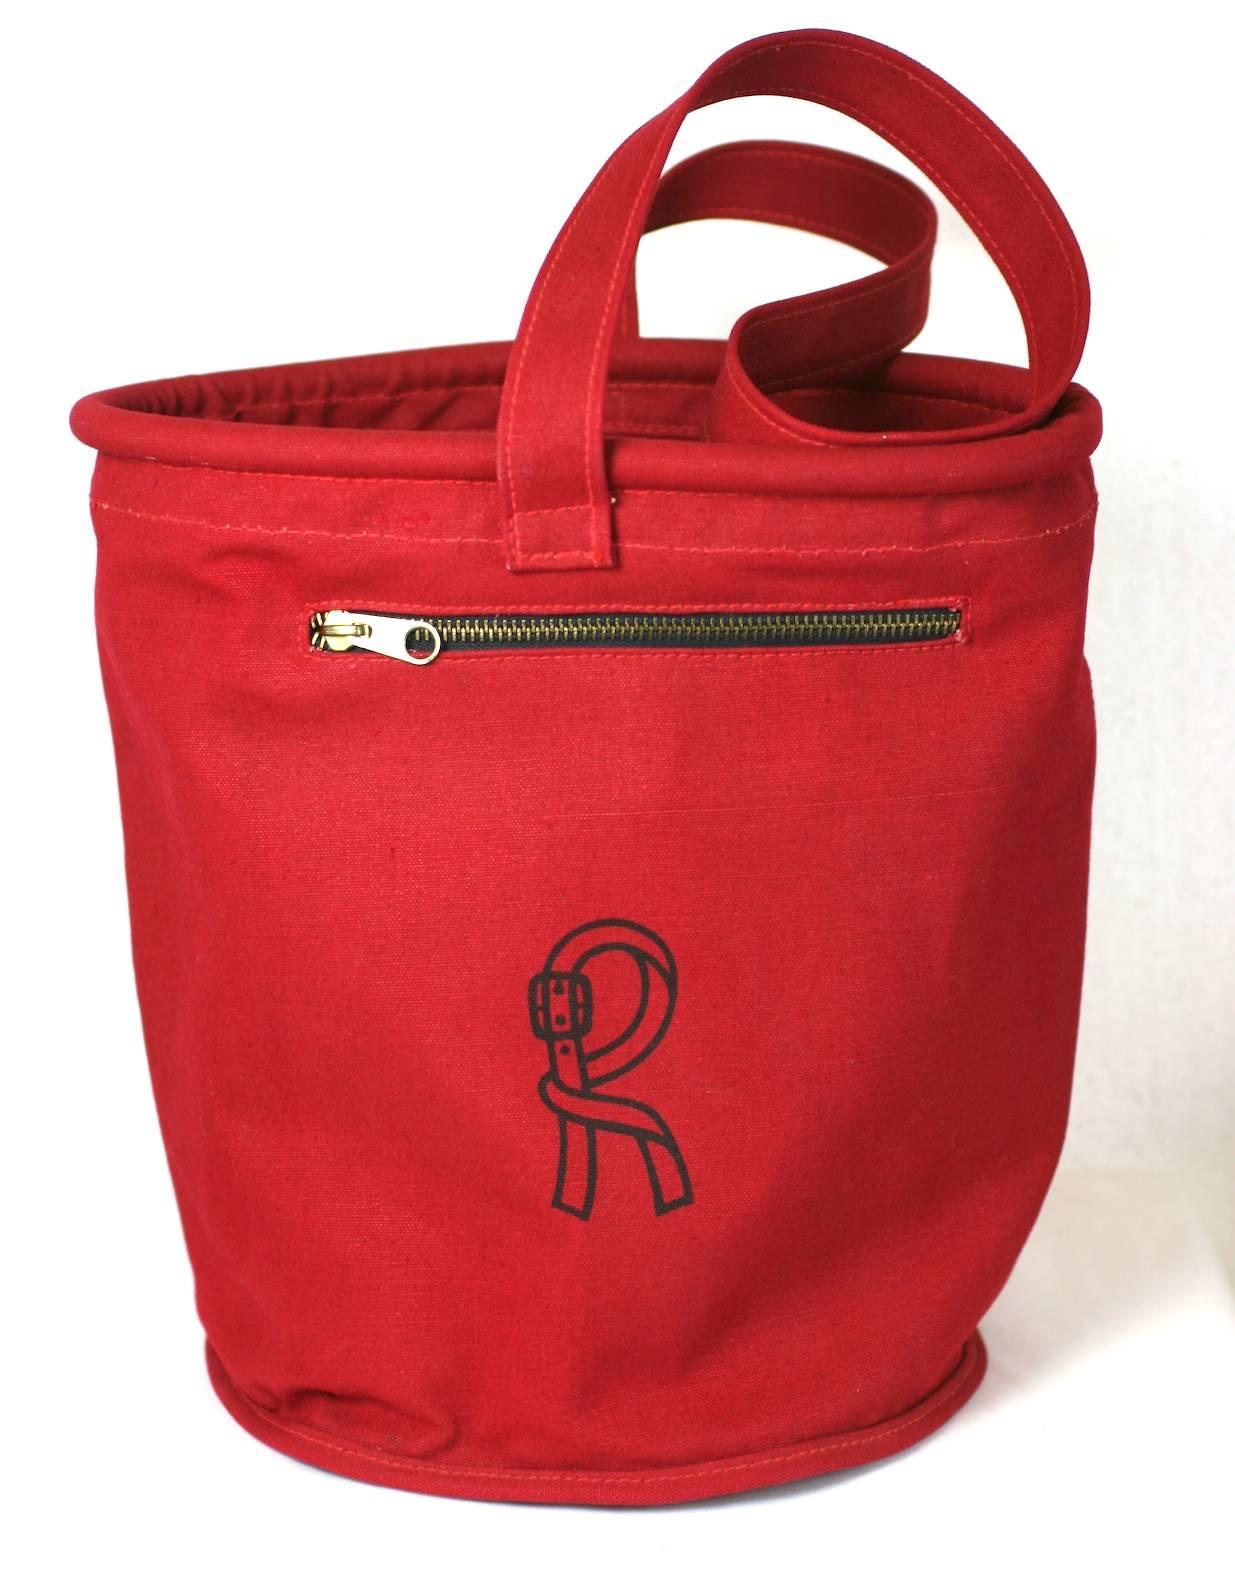 Sac à dos rouge Roberta di Camerino des années 1970. Sac seau en toile rouge avec des poches zippées en quinconce qui font le tour du sac. 
Logo imprimé en bleu marine sur le devant et tubulure raidie sur le bord supérieur. Italie, années